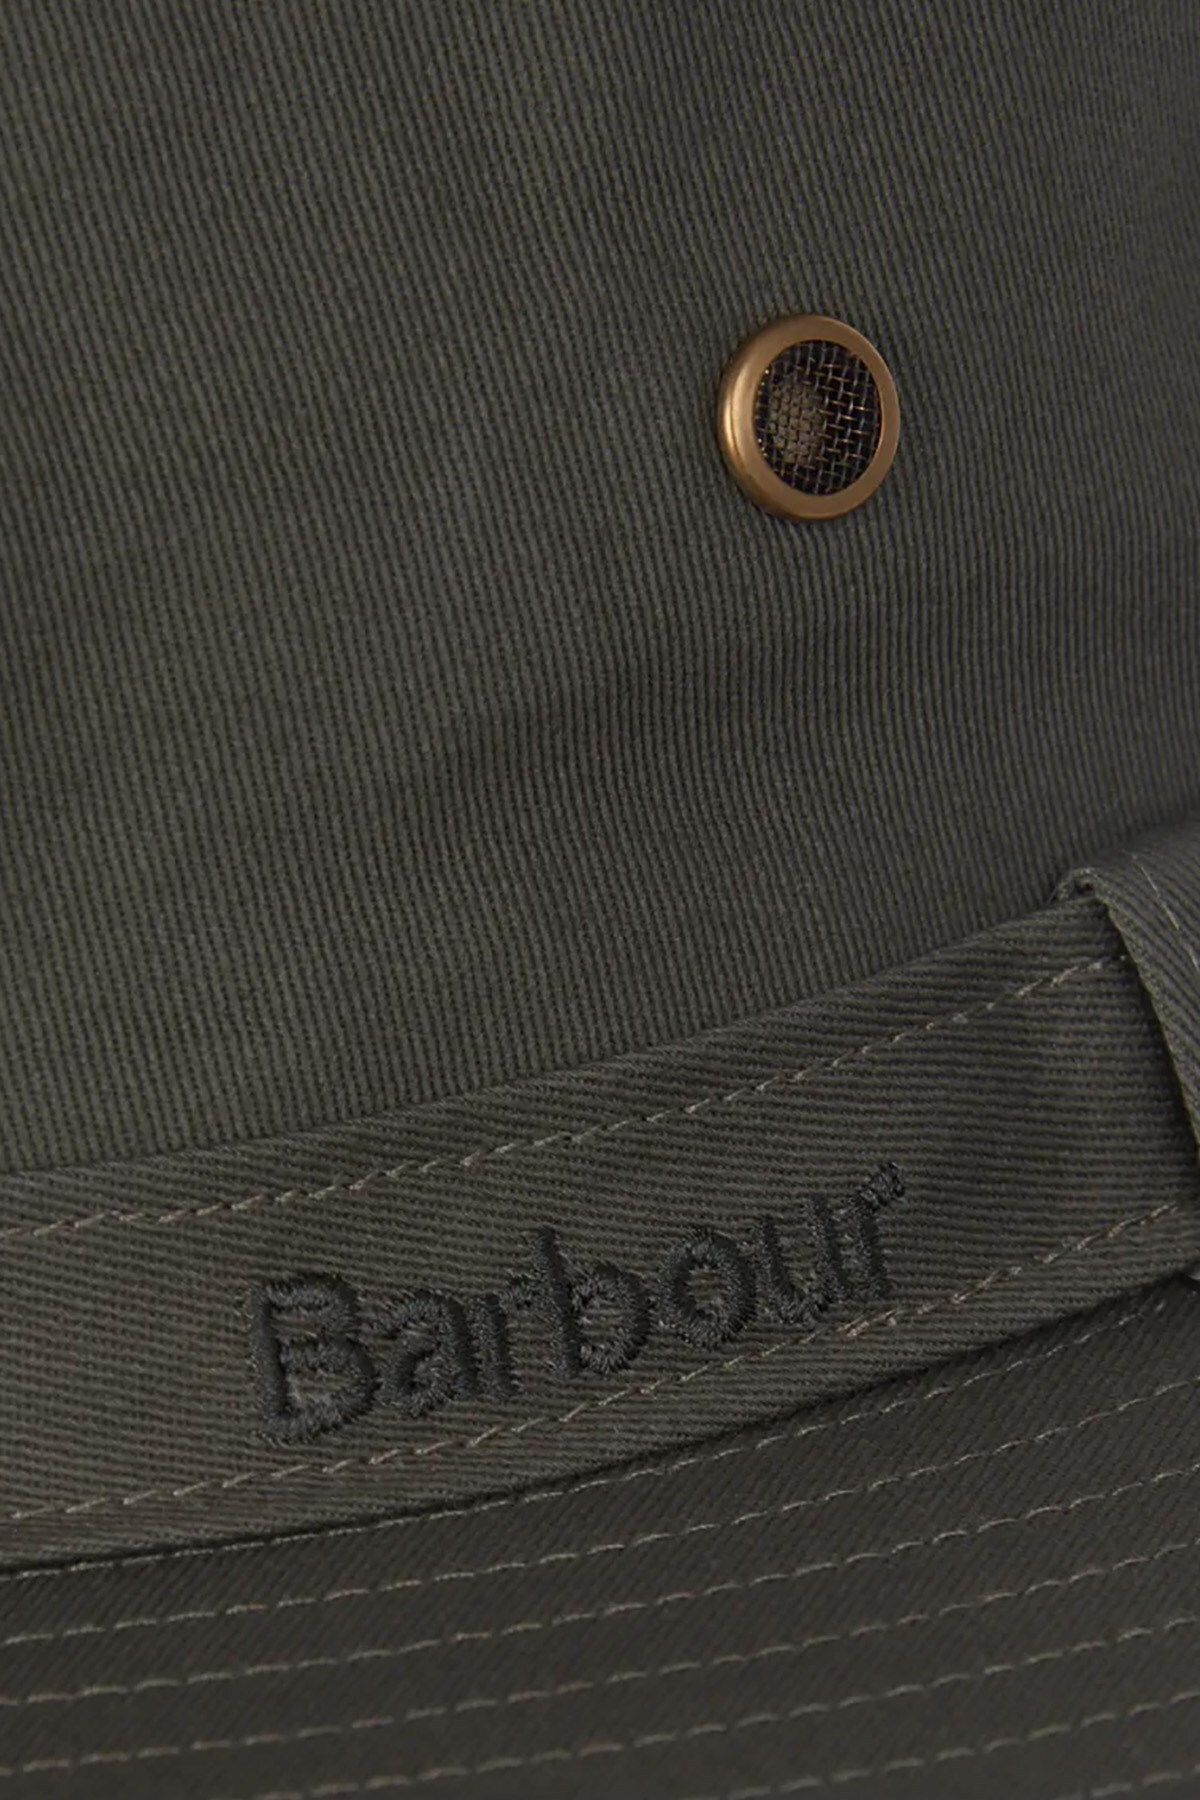 Barbour Dawson Safari Hat OL51 زیتون